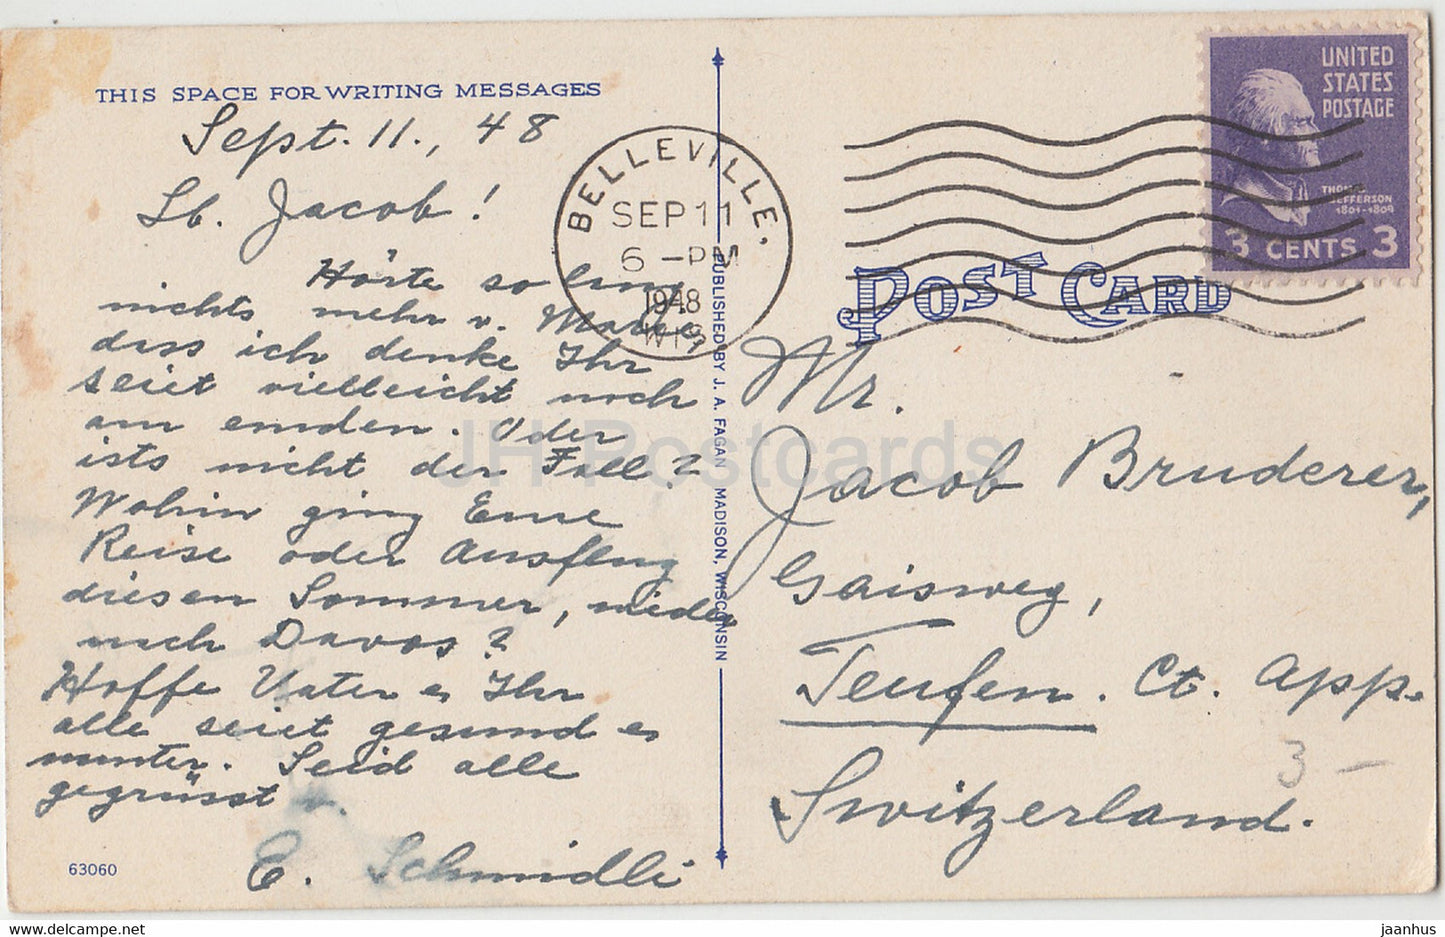 Madison – Blick auf Universitätsgebäude von der Agricultural Hall – alte Postkarte – 1948 – Vereinigte Staaten – USA – gebraucht